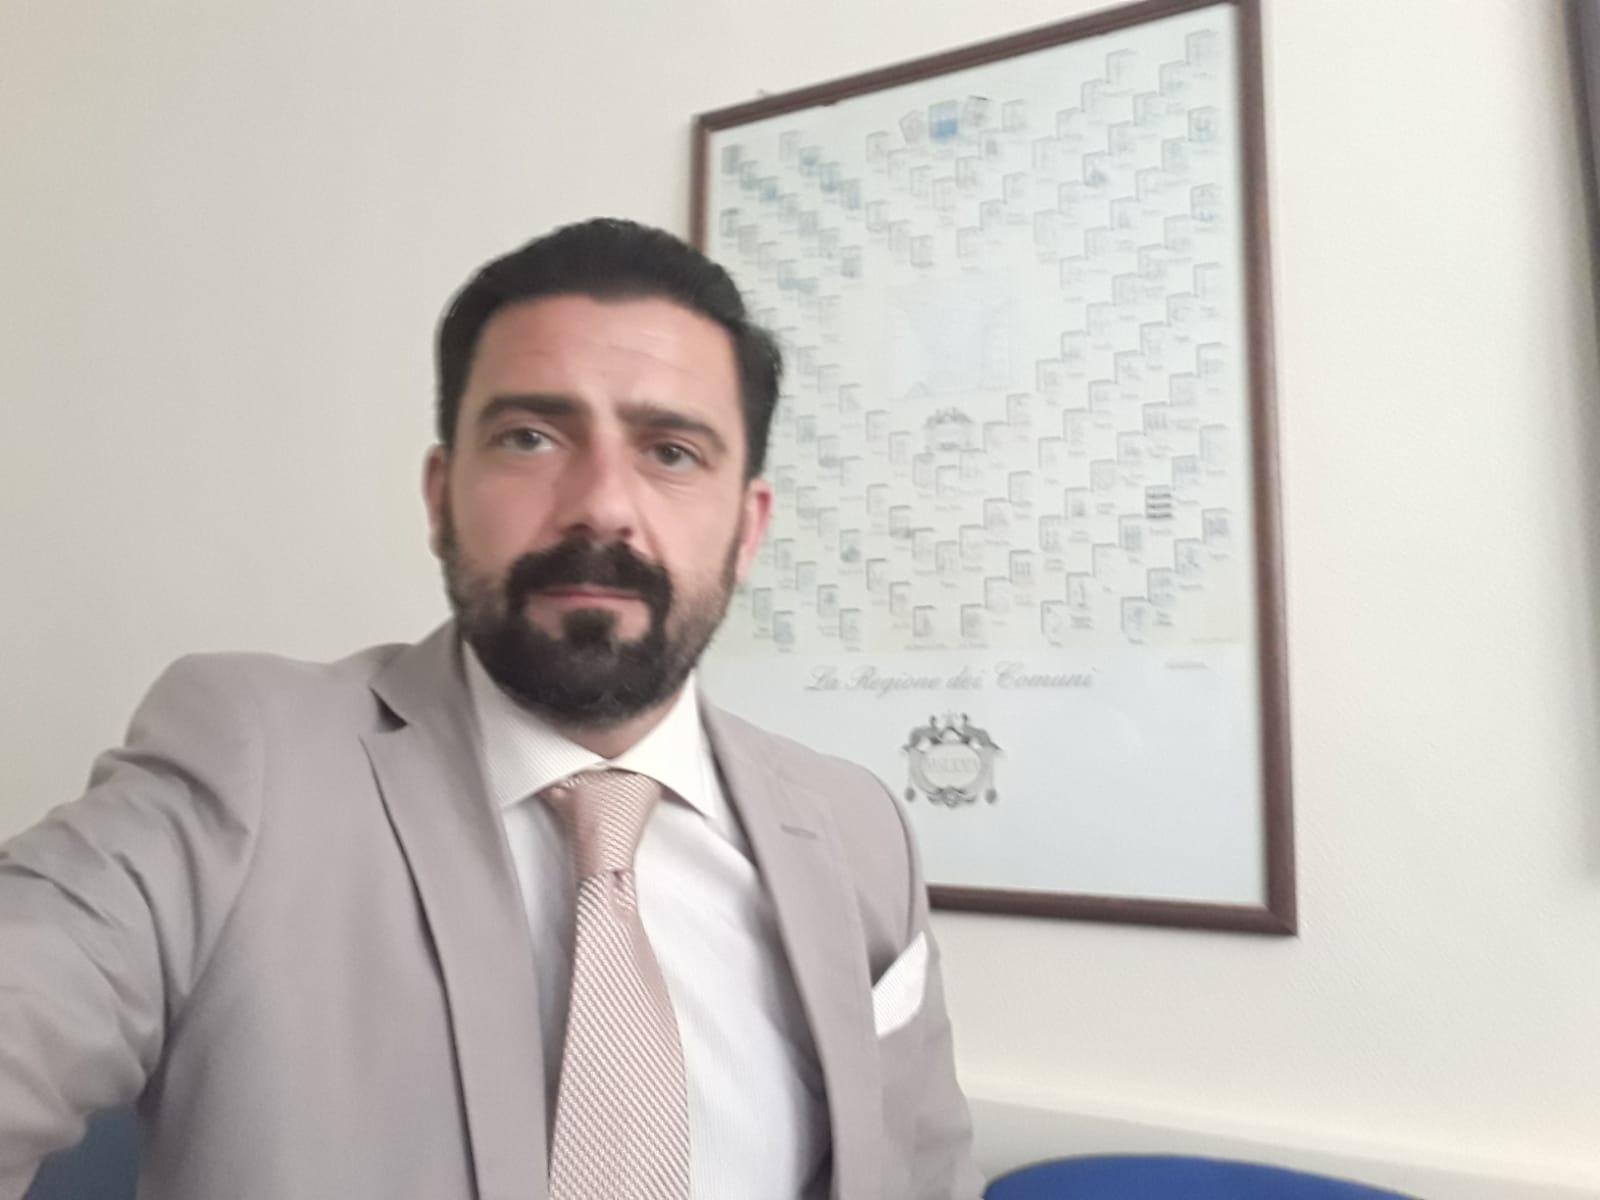 Antonio Caggiano, di Auletta il nuovo direttore dell’agenzia delle entrate di Pisticci e Policoro